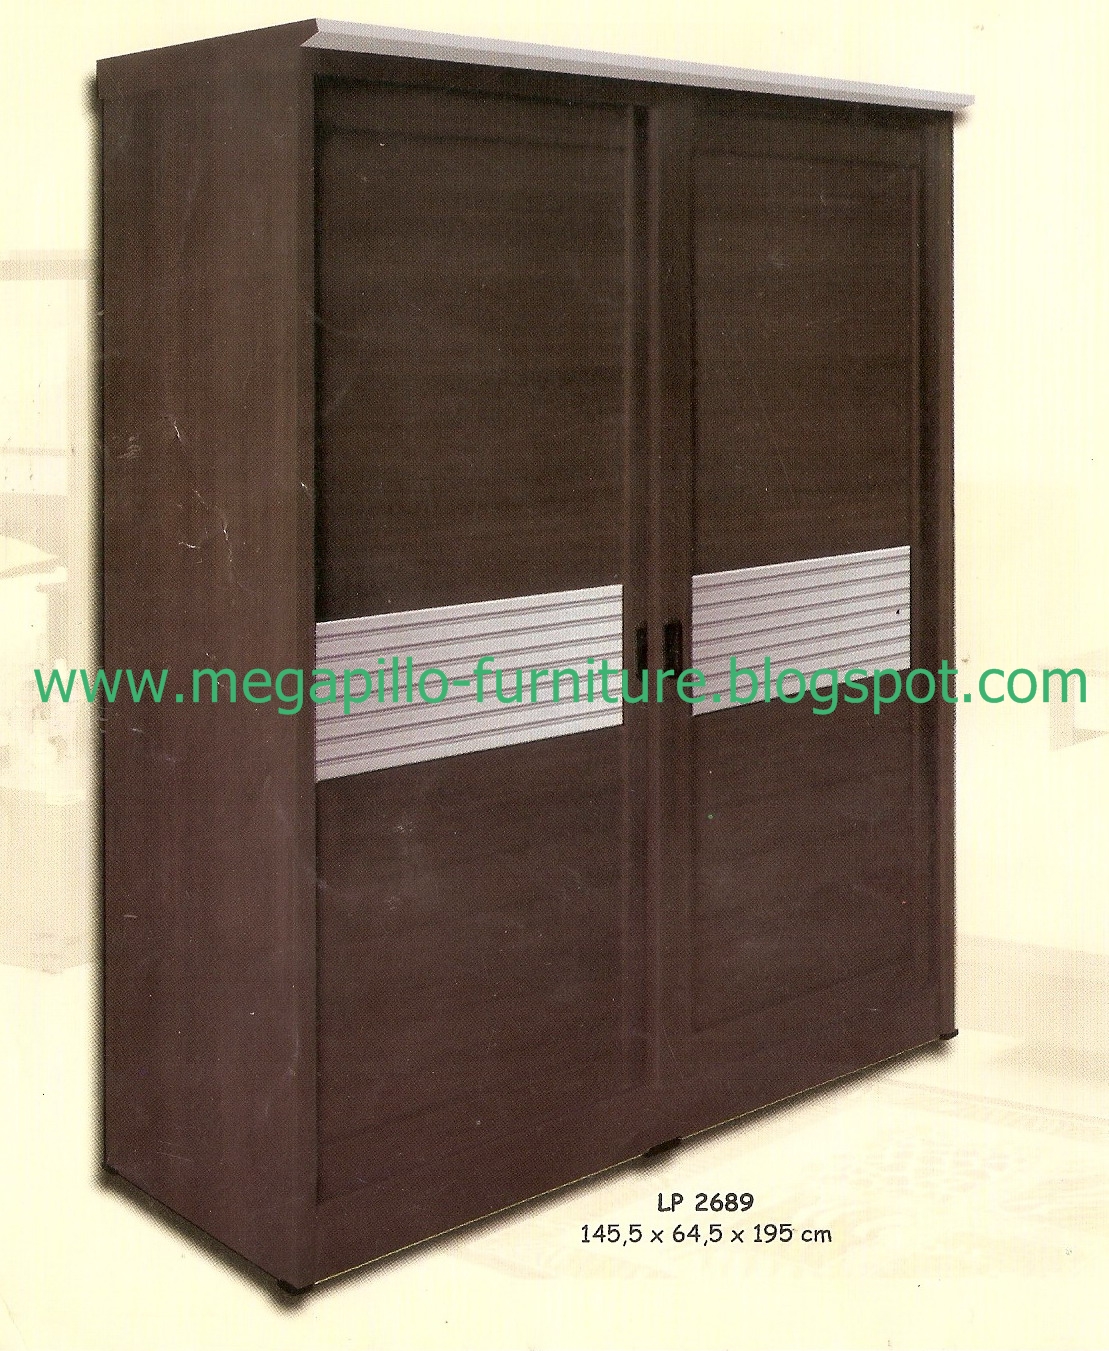 Megapillo Furniture Spring Bed Online Shop Lemari  